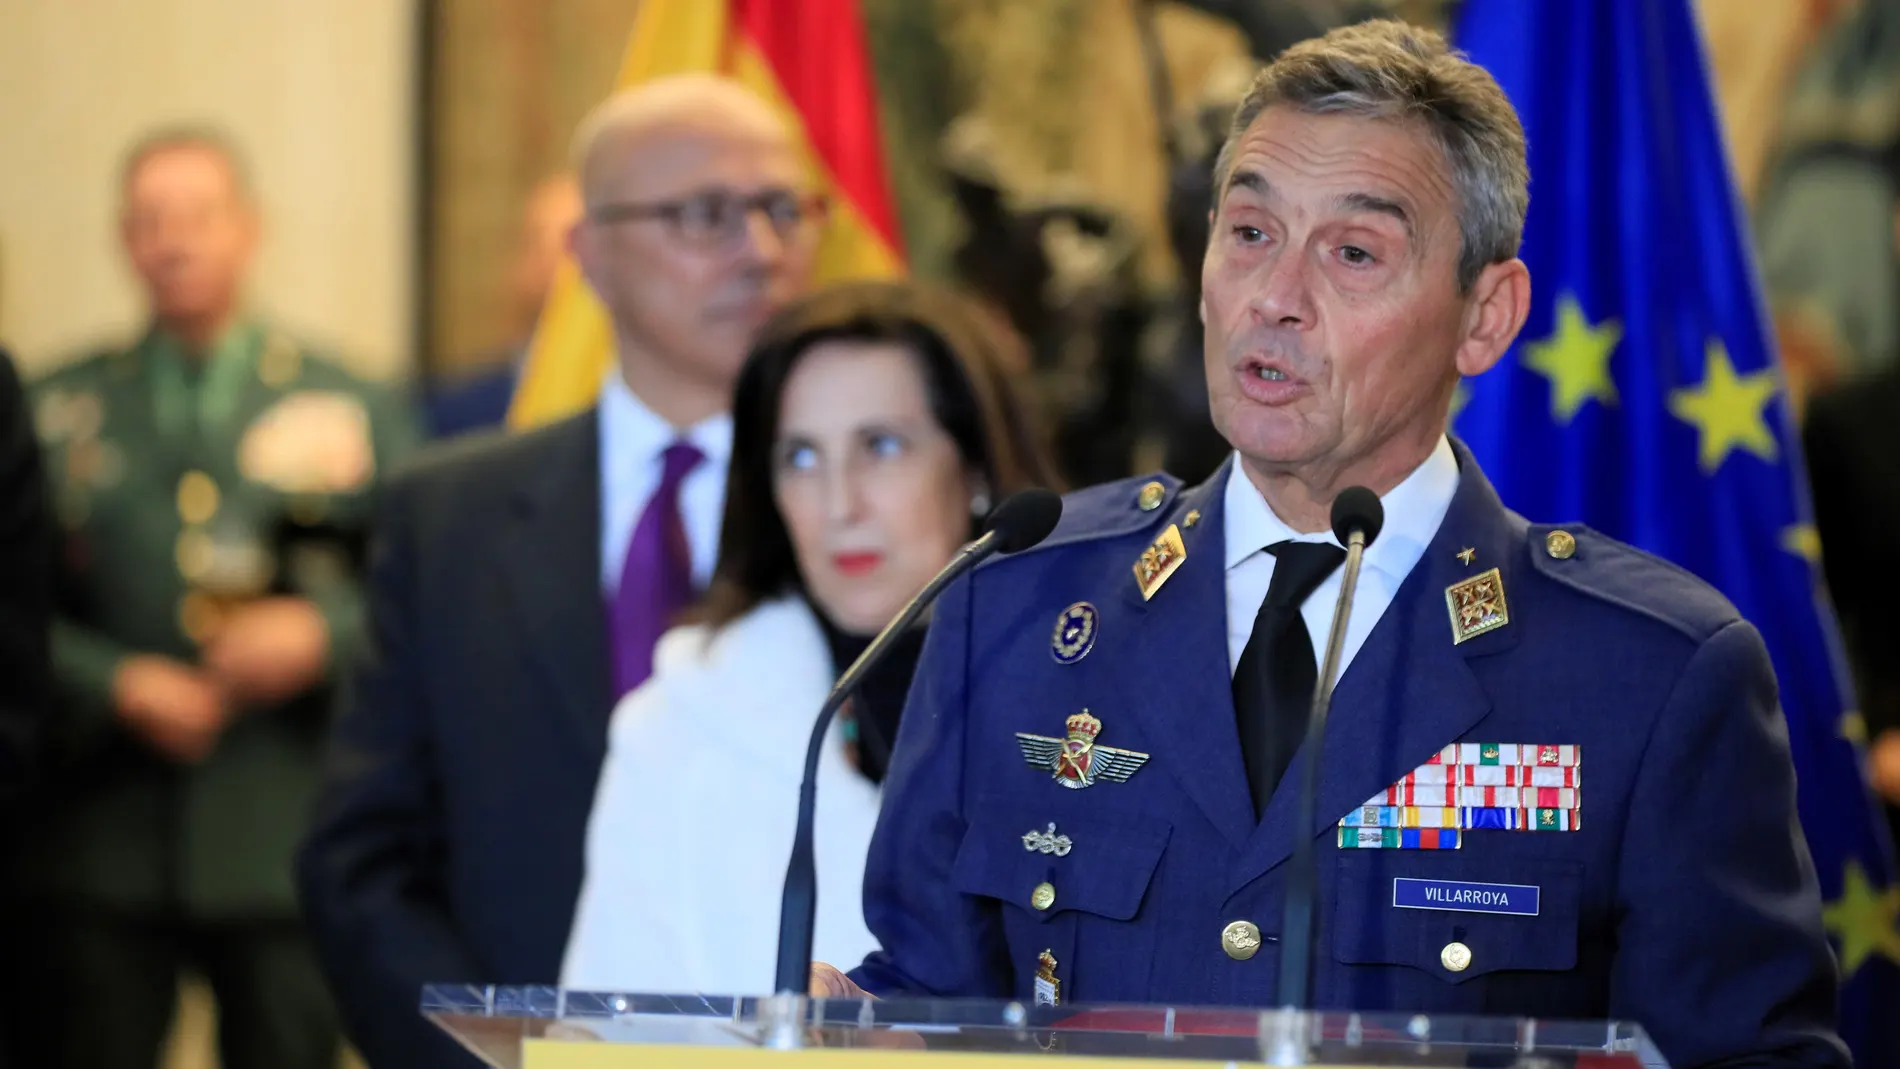 Fotografía de archivo del 17/01/2020 del jefe del Estado Mayor de la Defensa (JEMAD), general Miguel Ángel Villaroya